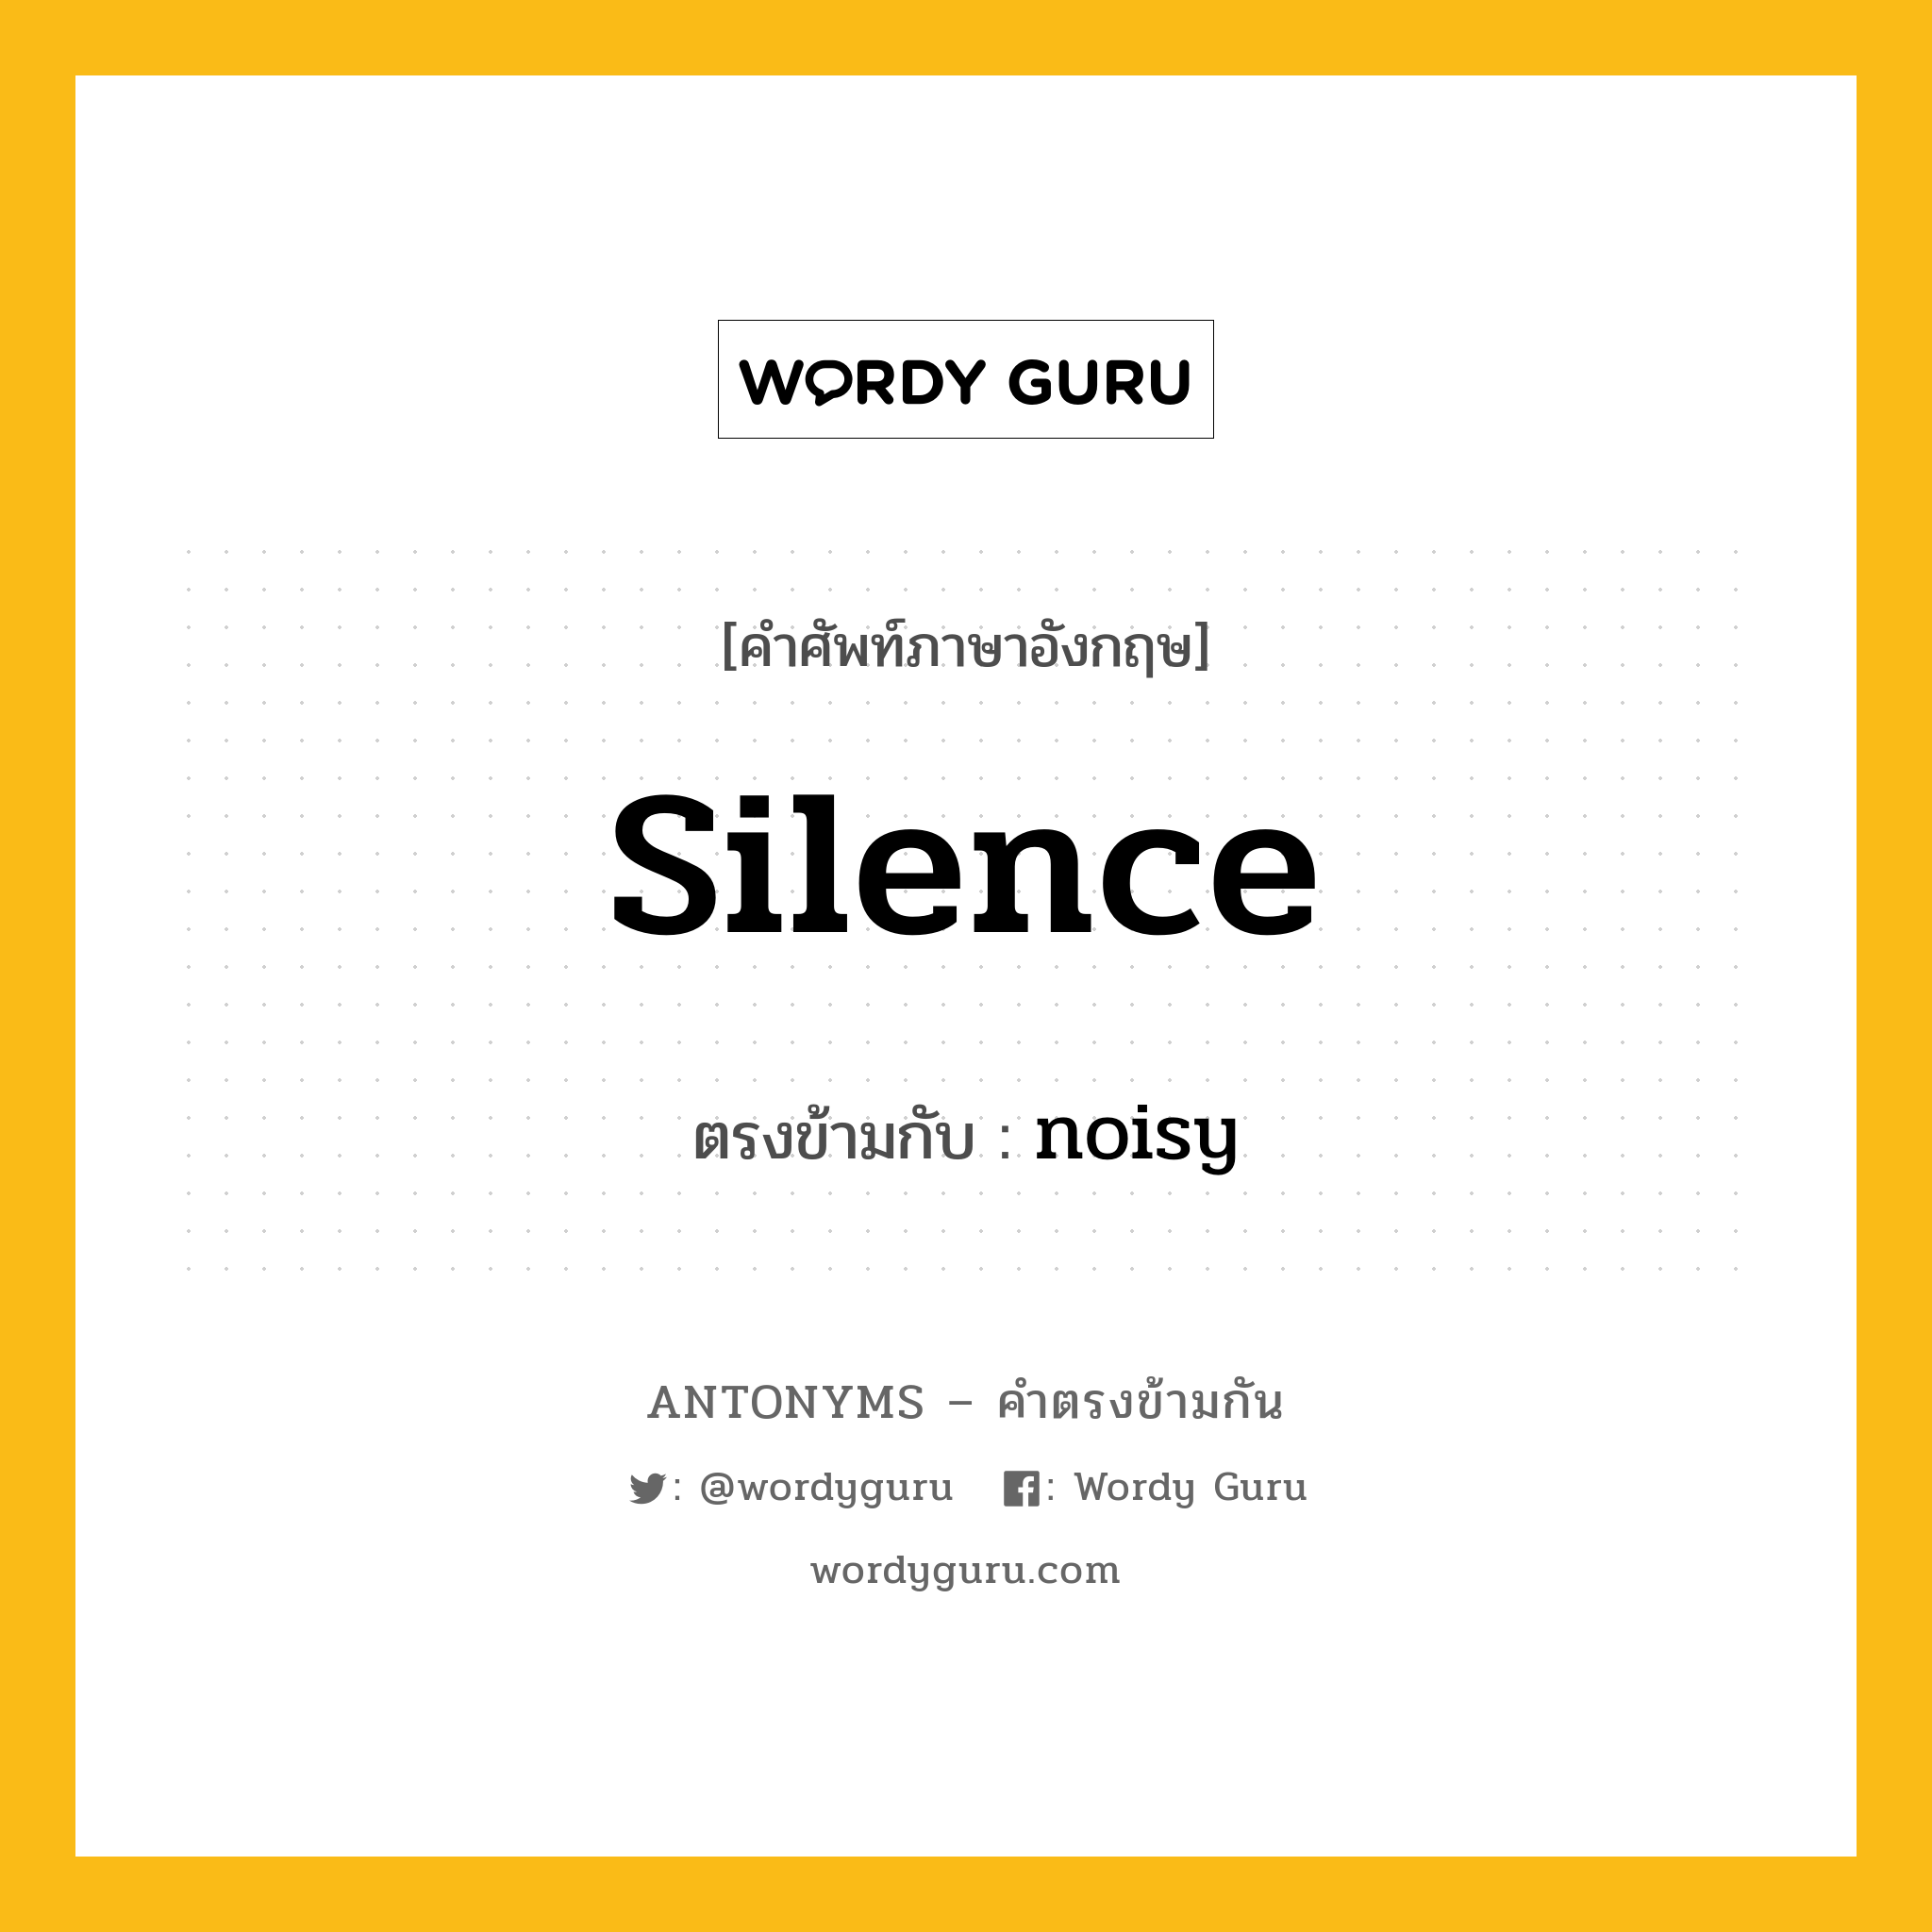 silence เป็นคำตรงข้ามกับคำไหนบ้าง?, คำศัพท์ภาษาอังกฤษ silence ตรงข้ามกับ noisy หมวด noisy